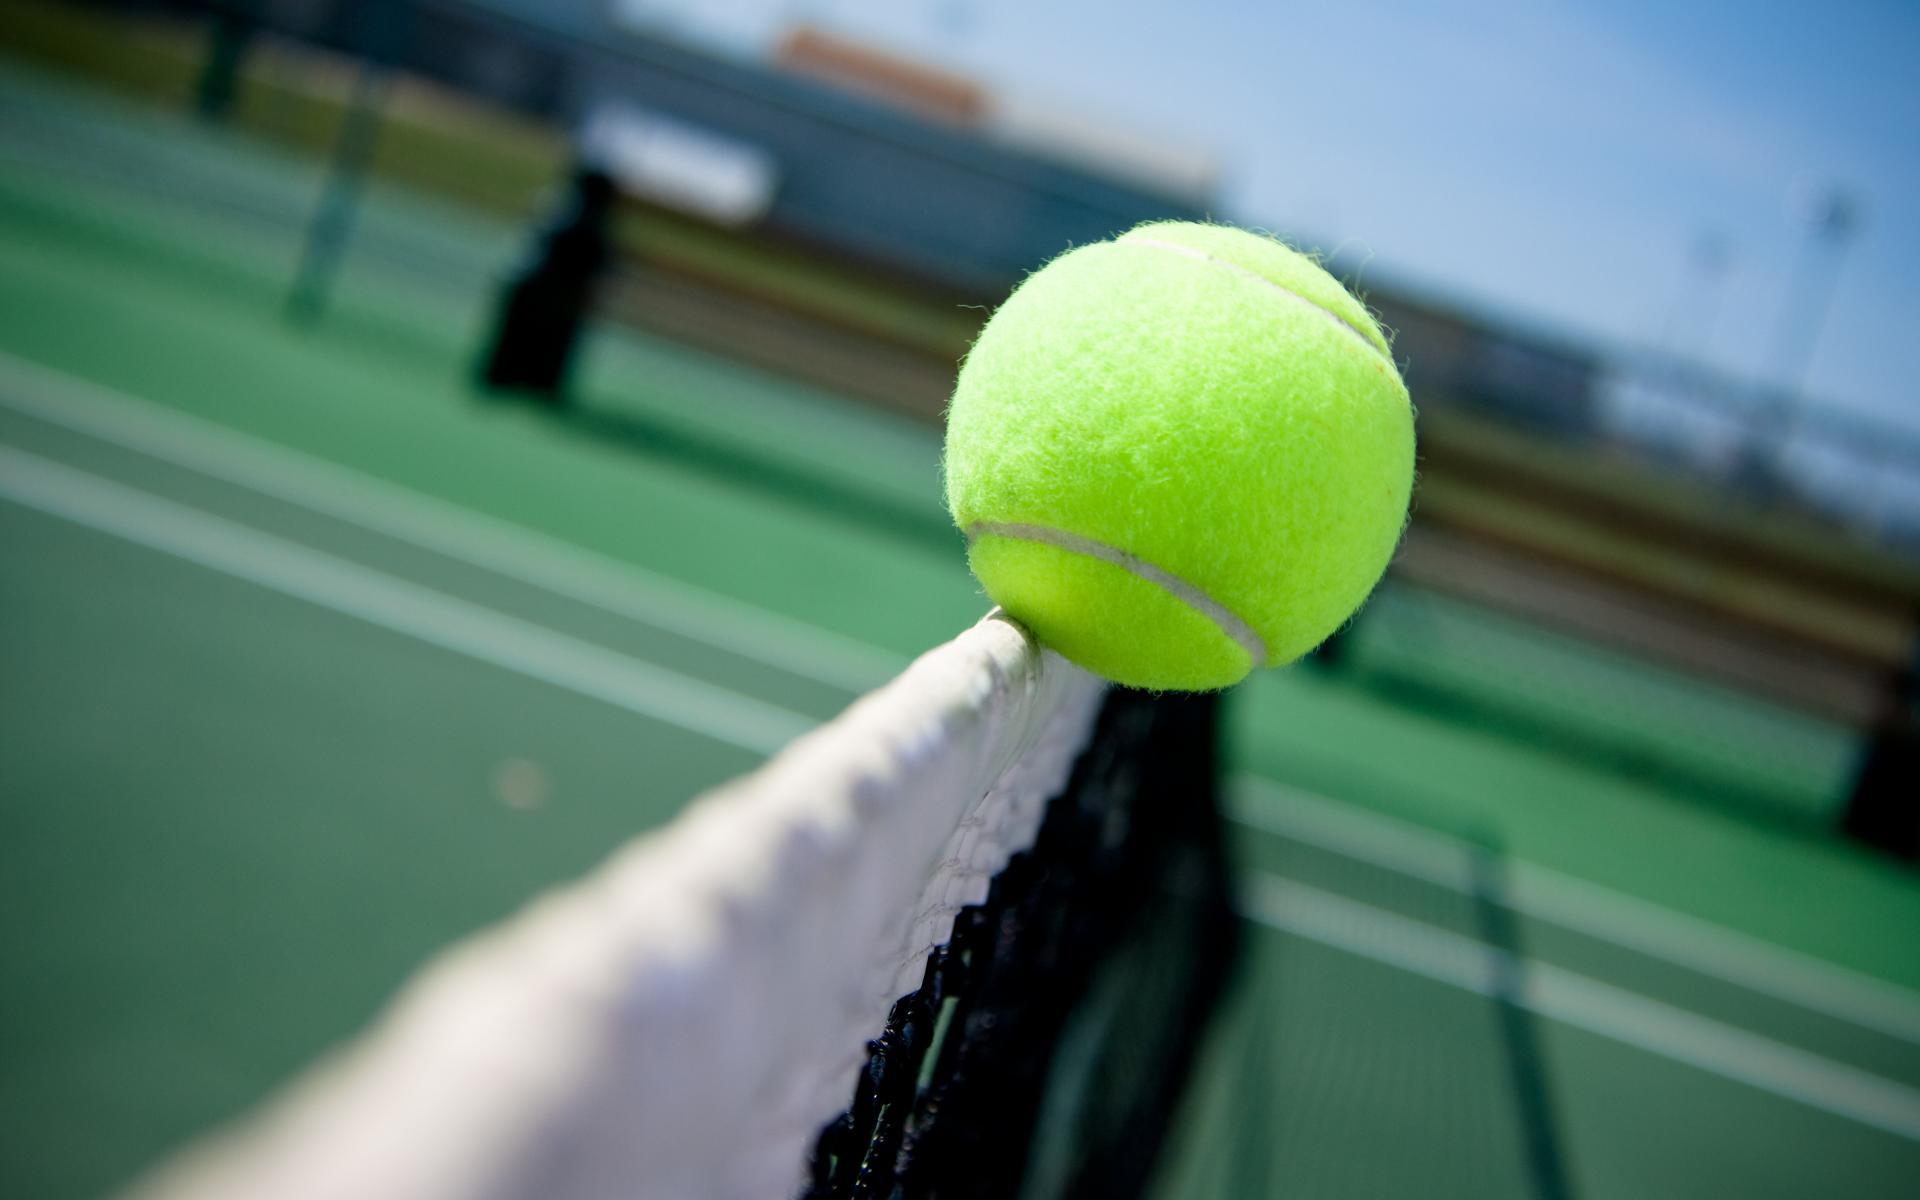 100000 ảnh đẹp nhất về Bóng Tennis  Tải xuống miễn phí 100  Ảnh có sẵn  của Pexels